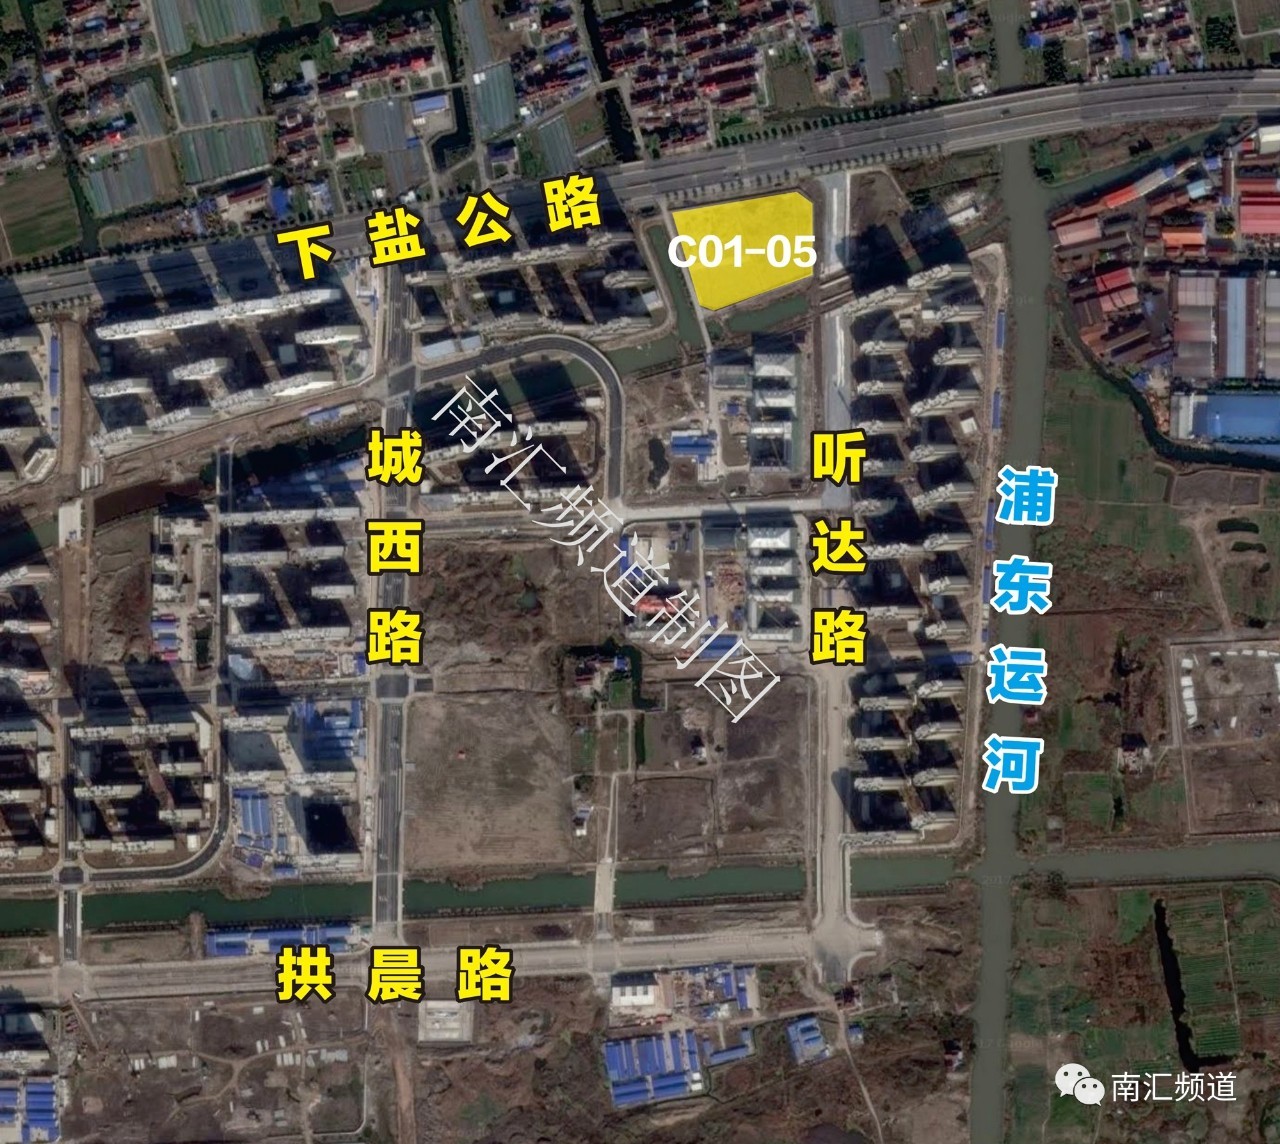 该地块位于惠南城北民乐大居规划区域内,编号为c05-01,地块东至听达路